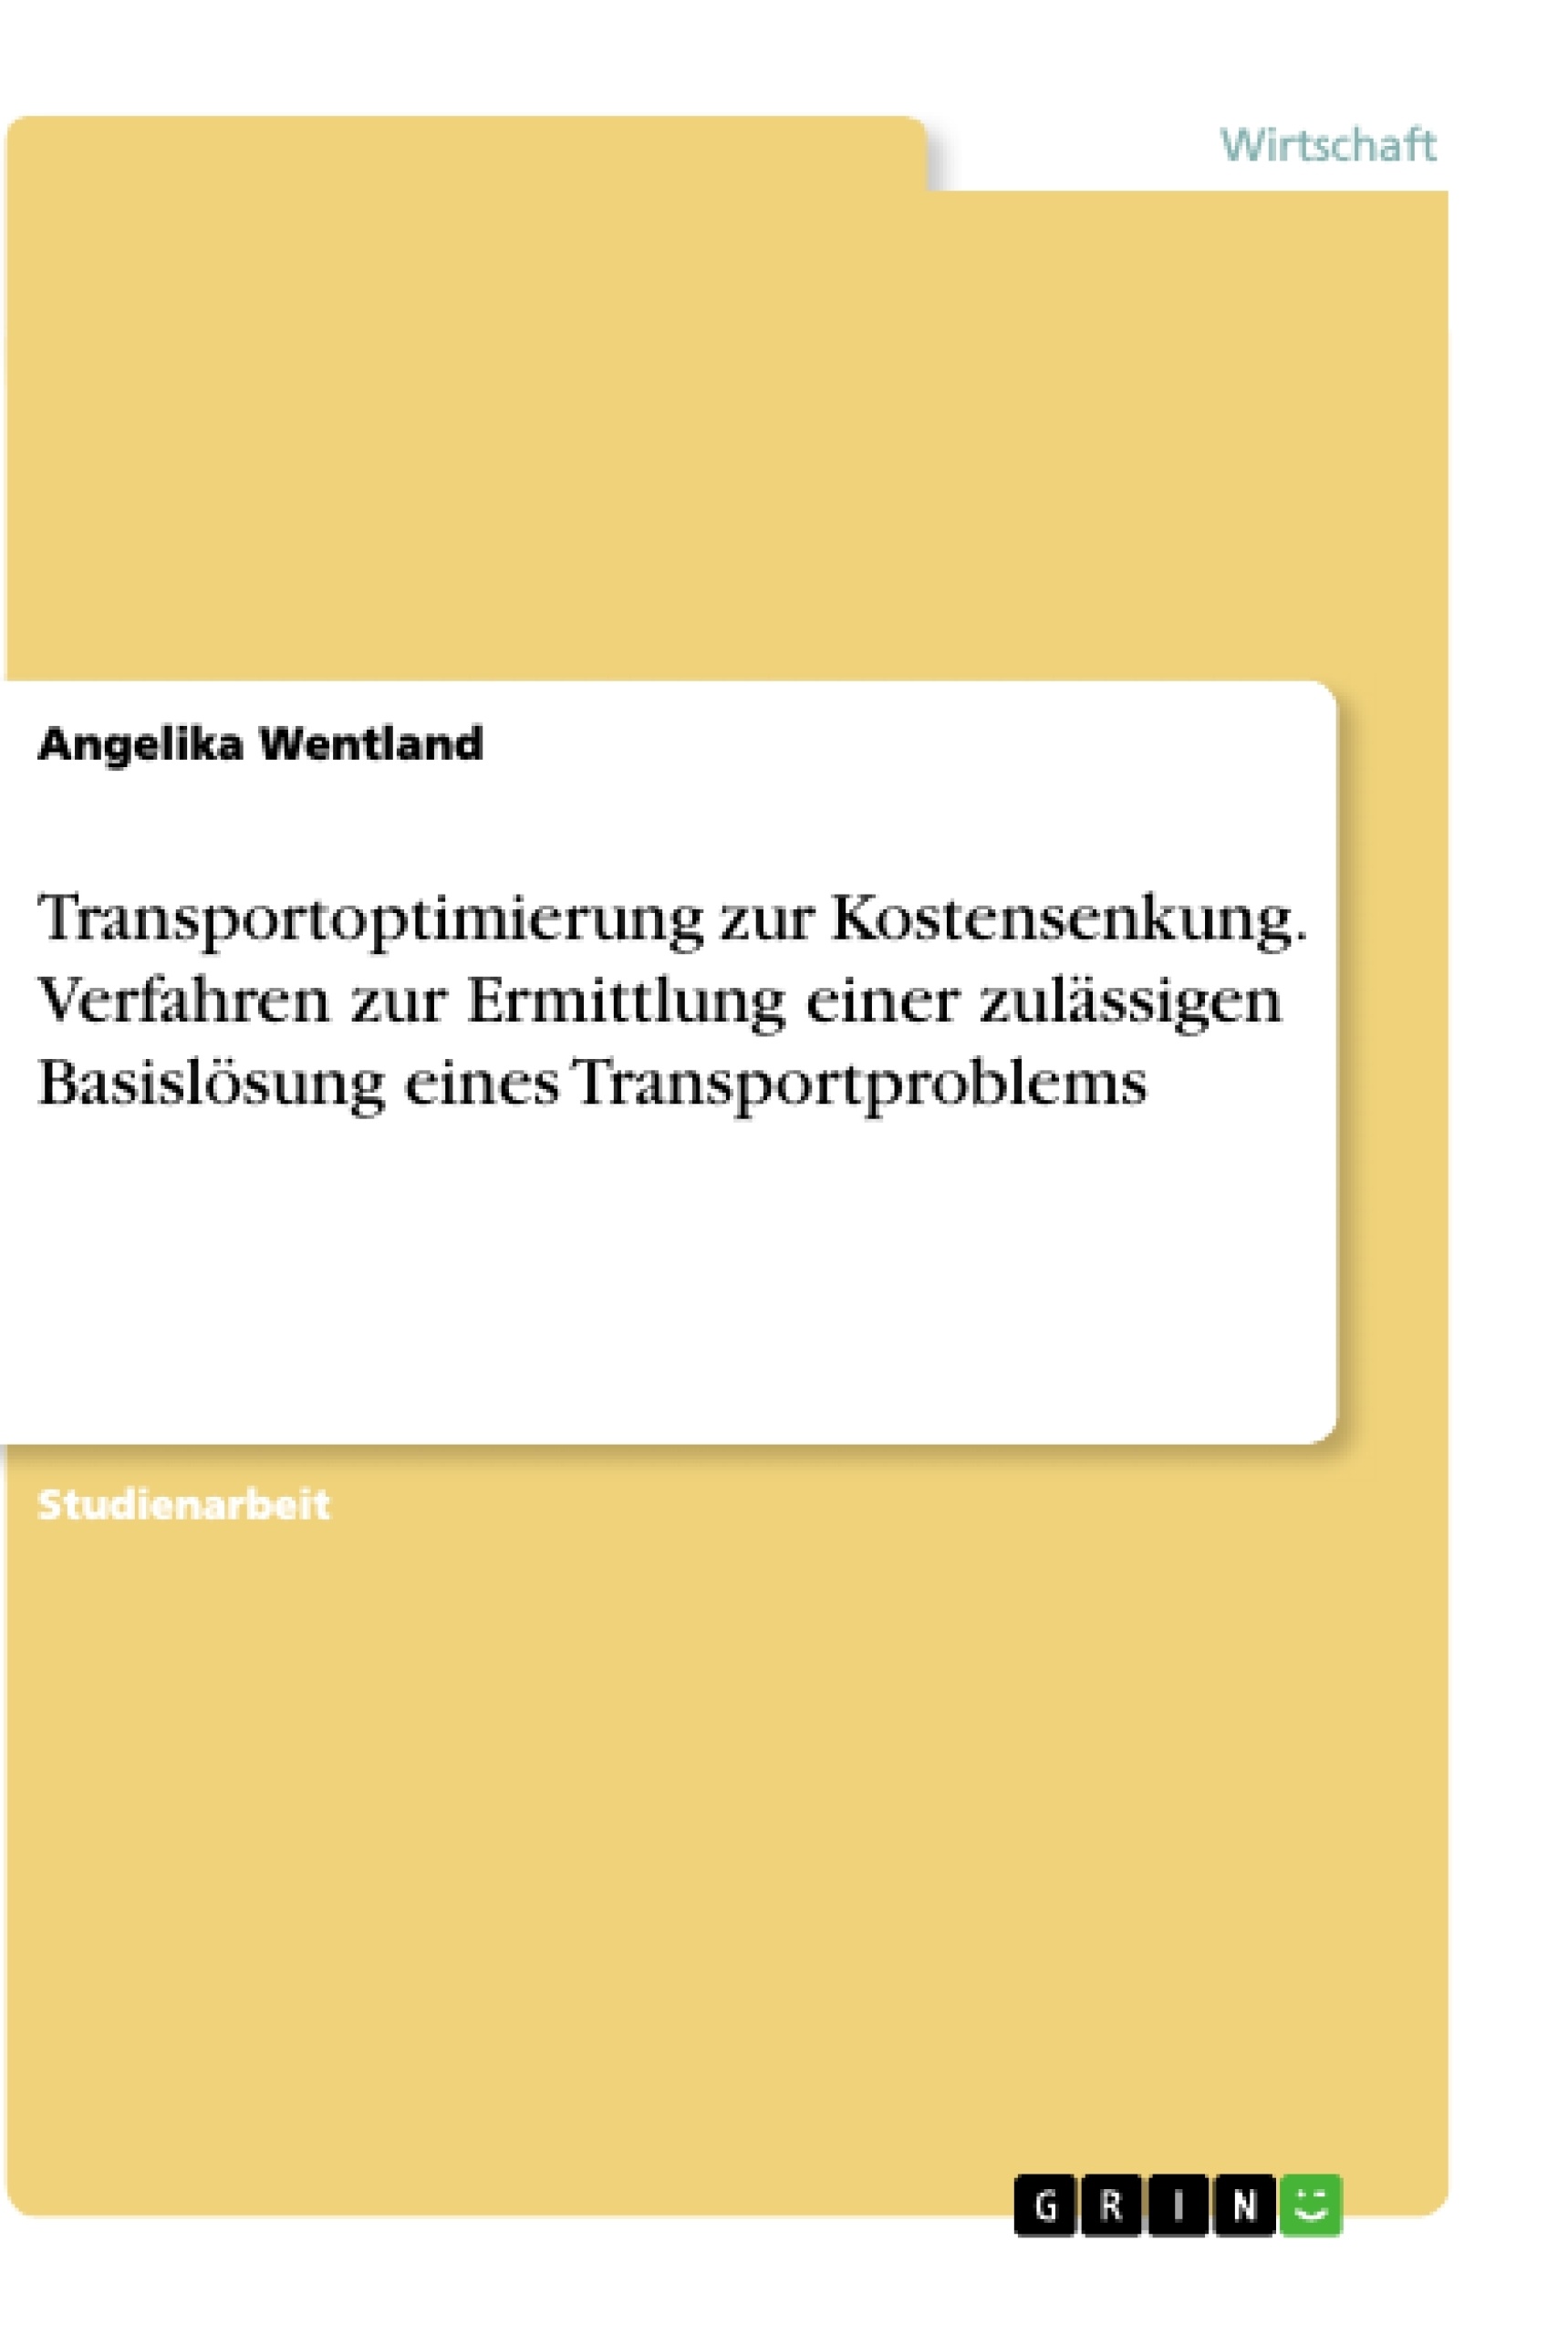 Title: Transportoptimierung zur Kostensenkung. Verfahren zur Ermittlung einer zulässigen Basislösung eines Transportproblems